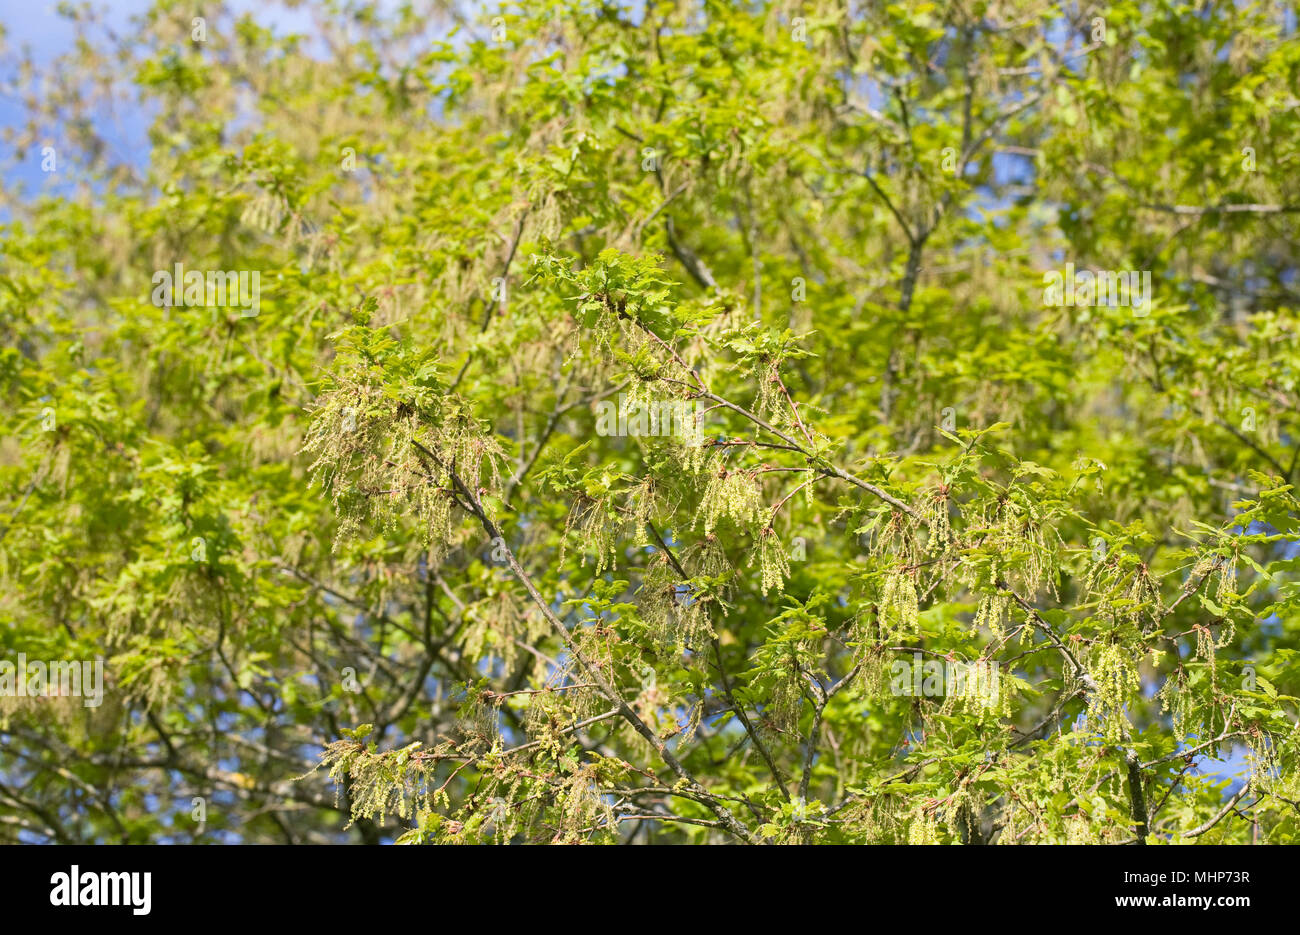 Quercus robur. Oak tree flowering in Spring. Stock Photo